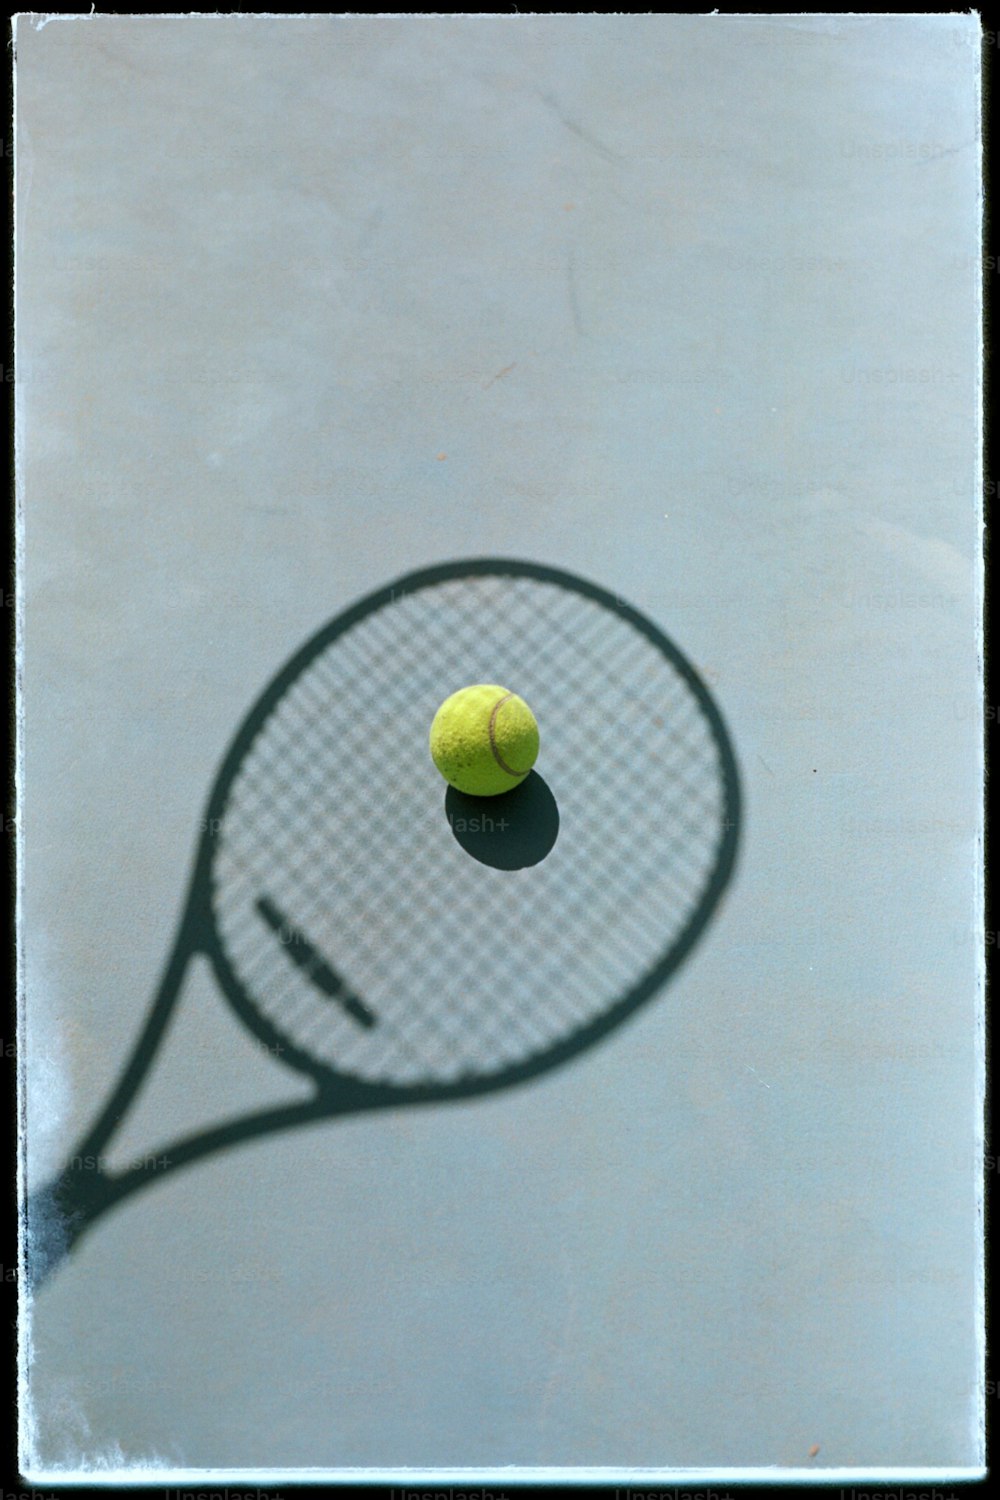 테니스 라켓과 테니스 공의 그림자